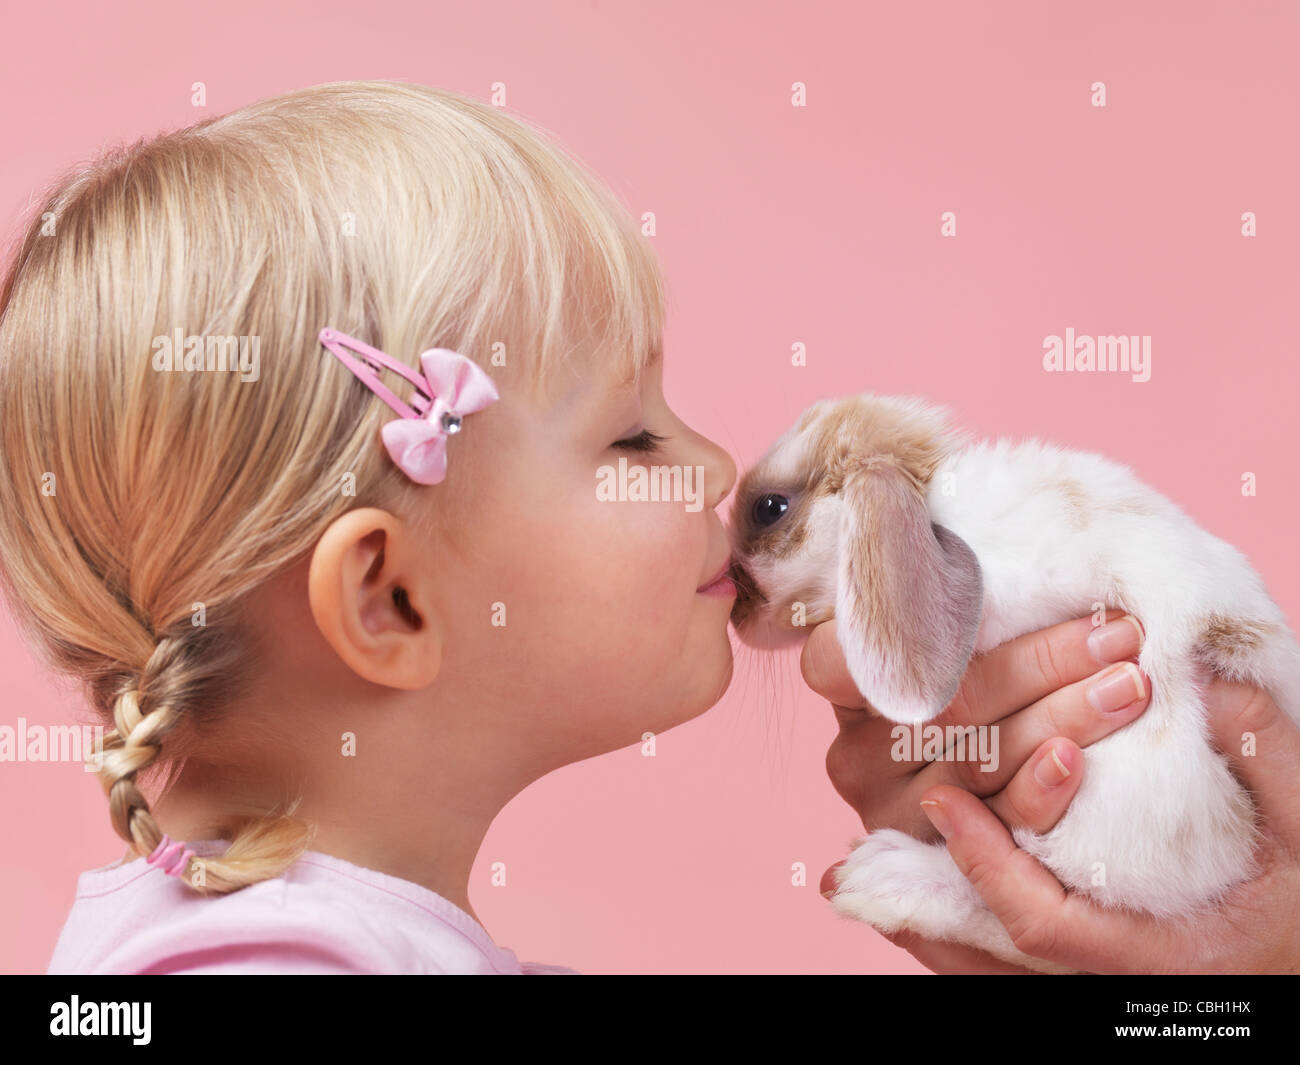 Jolie fillette de trois ans s'embrasser un lapin animal isolé sur fond rose Banque D'Images